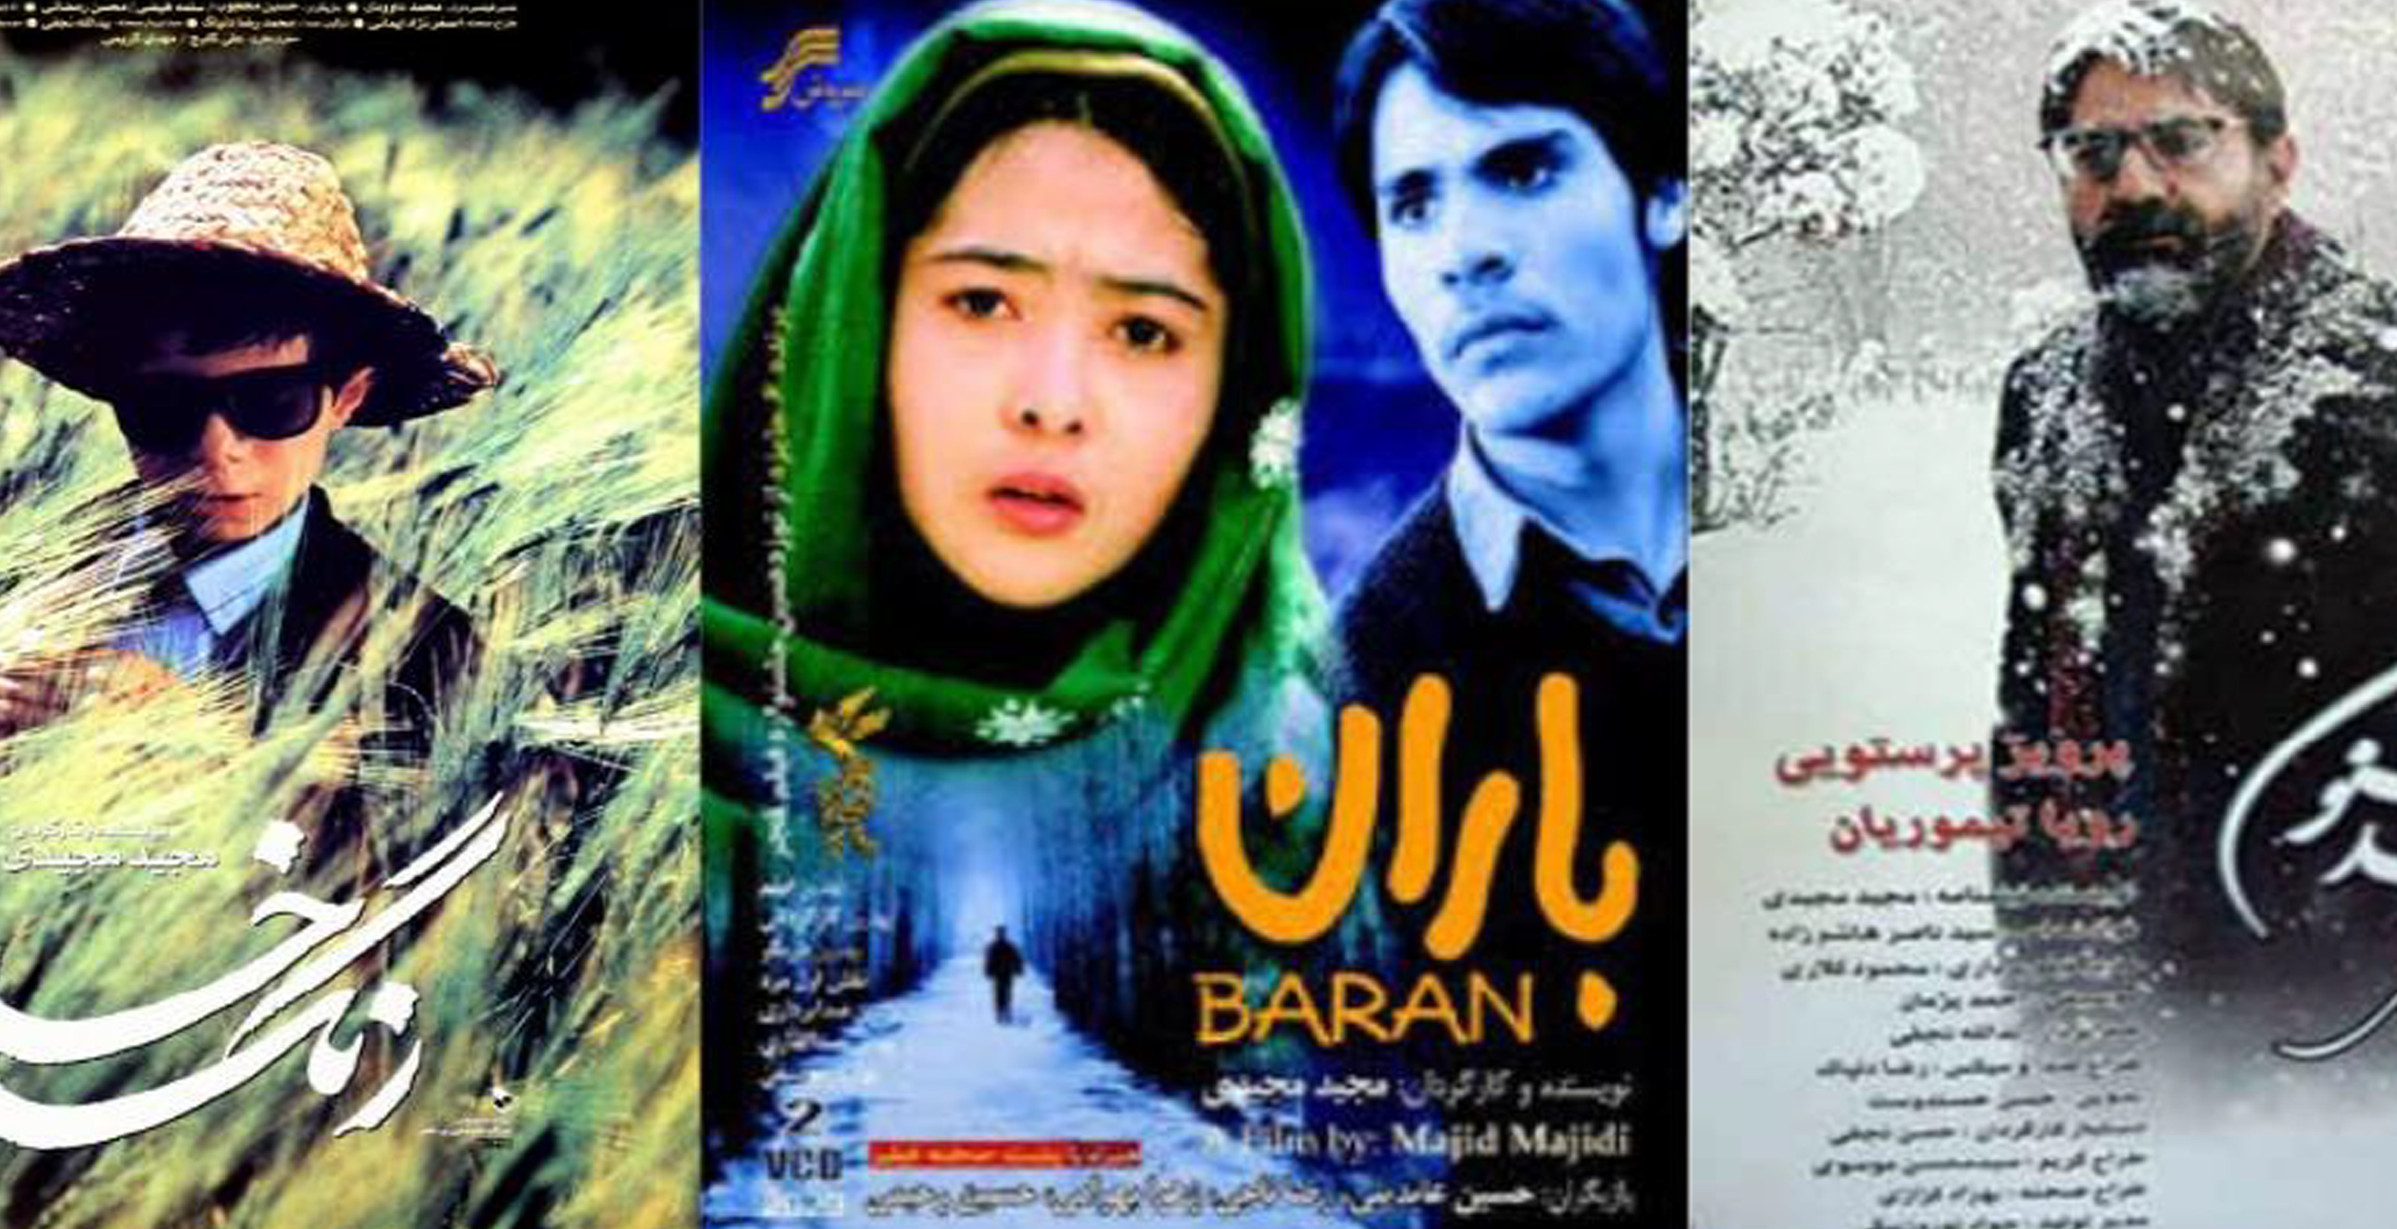 VI Congreso Internacional sobre cine iraní dedicado al misticismo